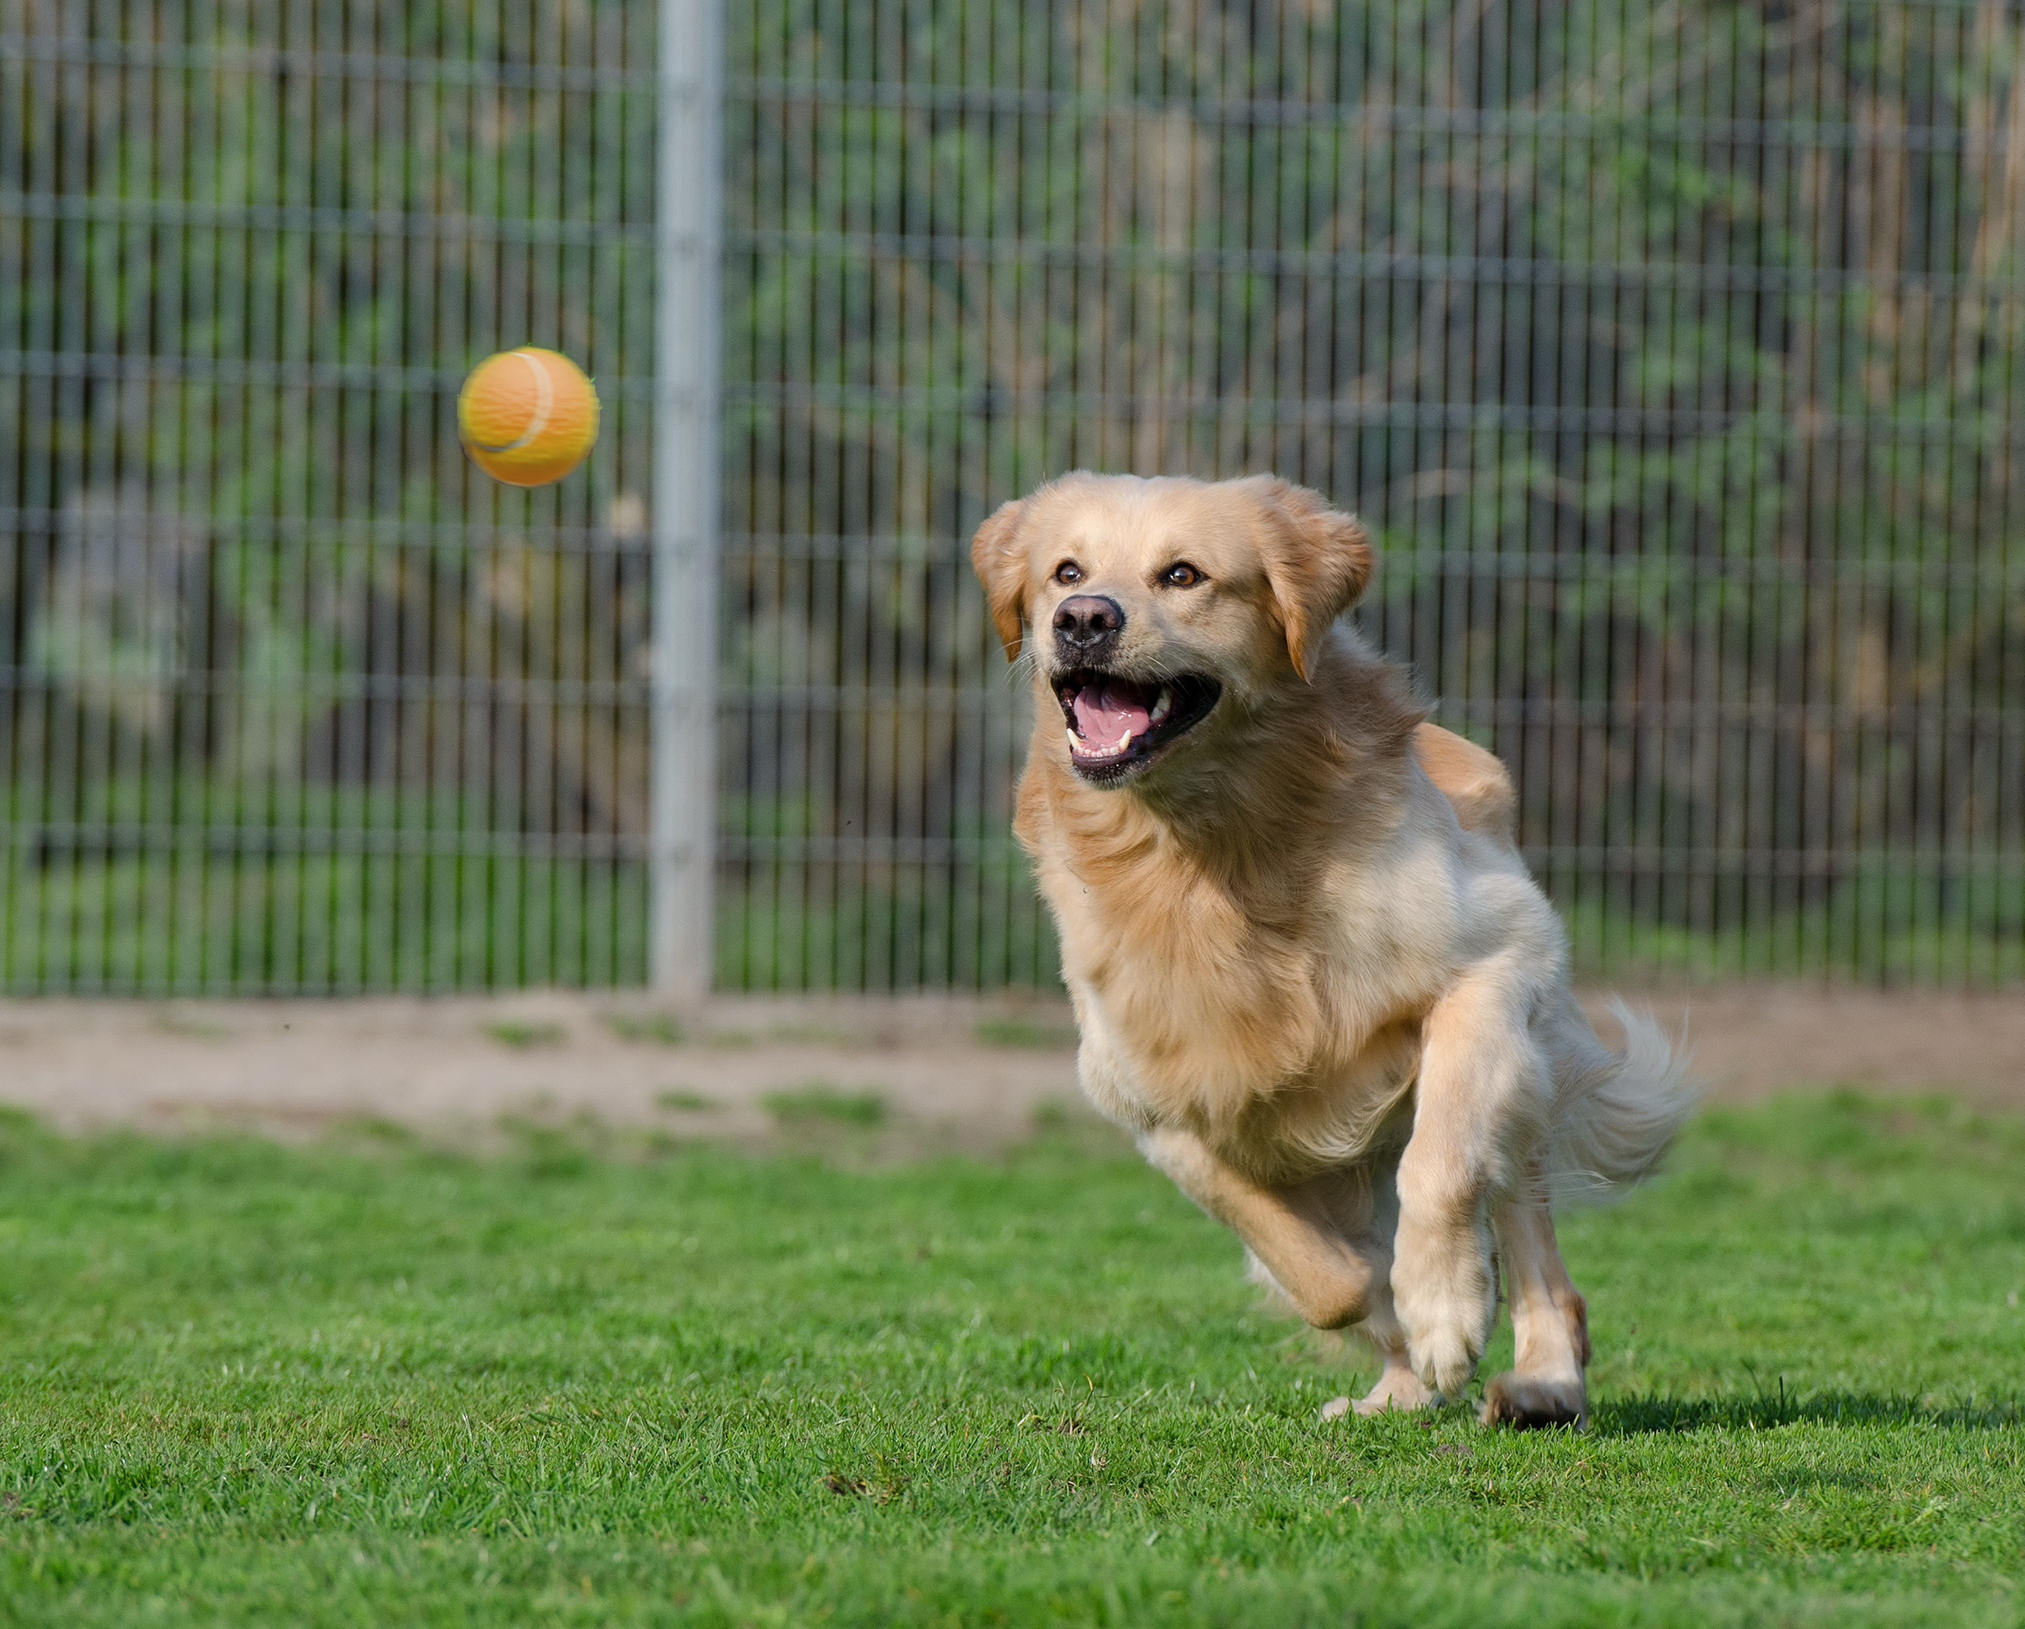 Golden Retriever chasing a tennis ball